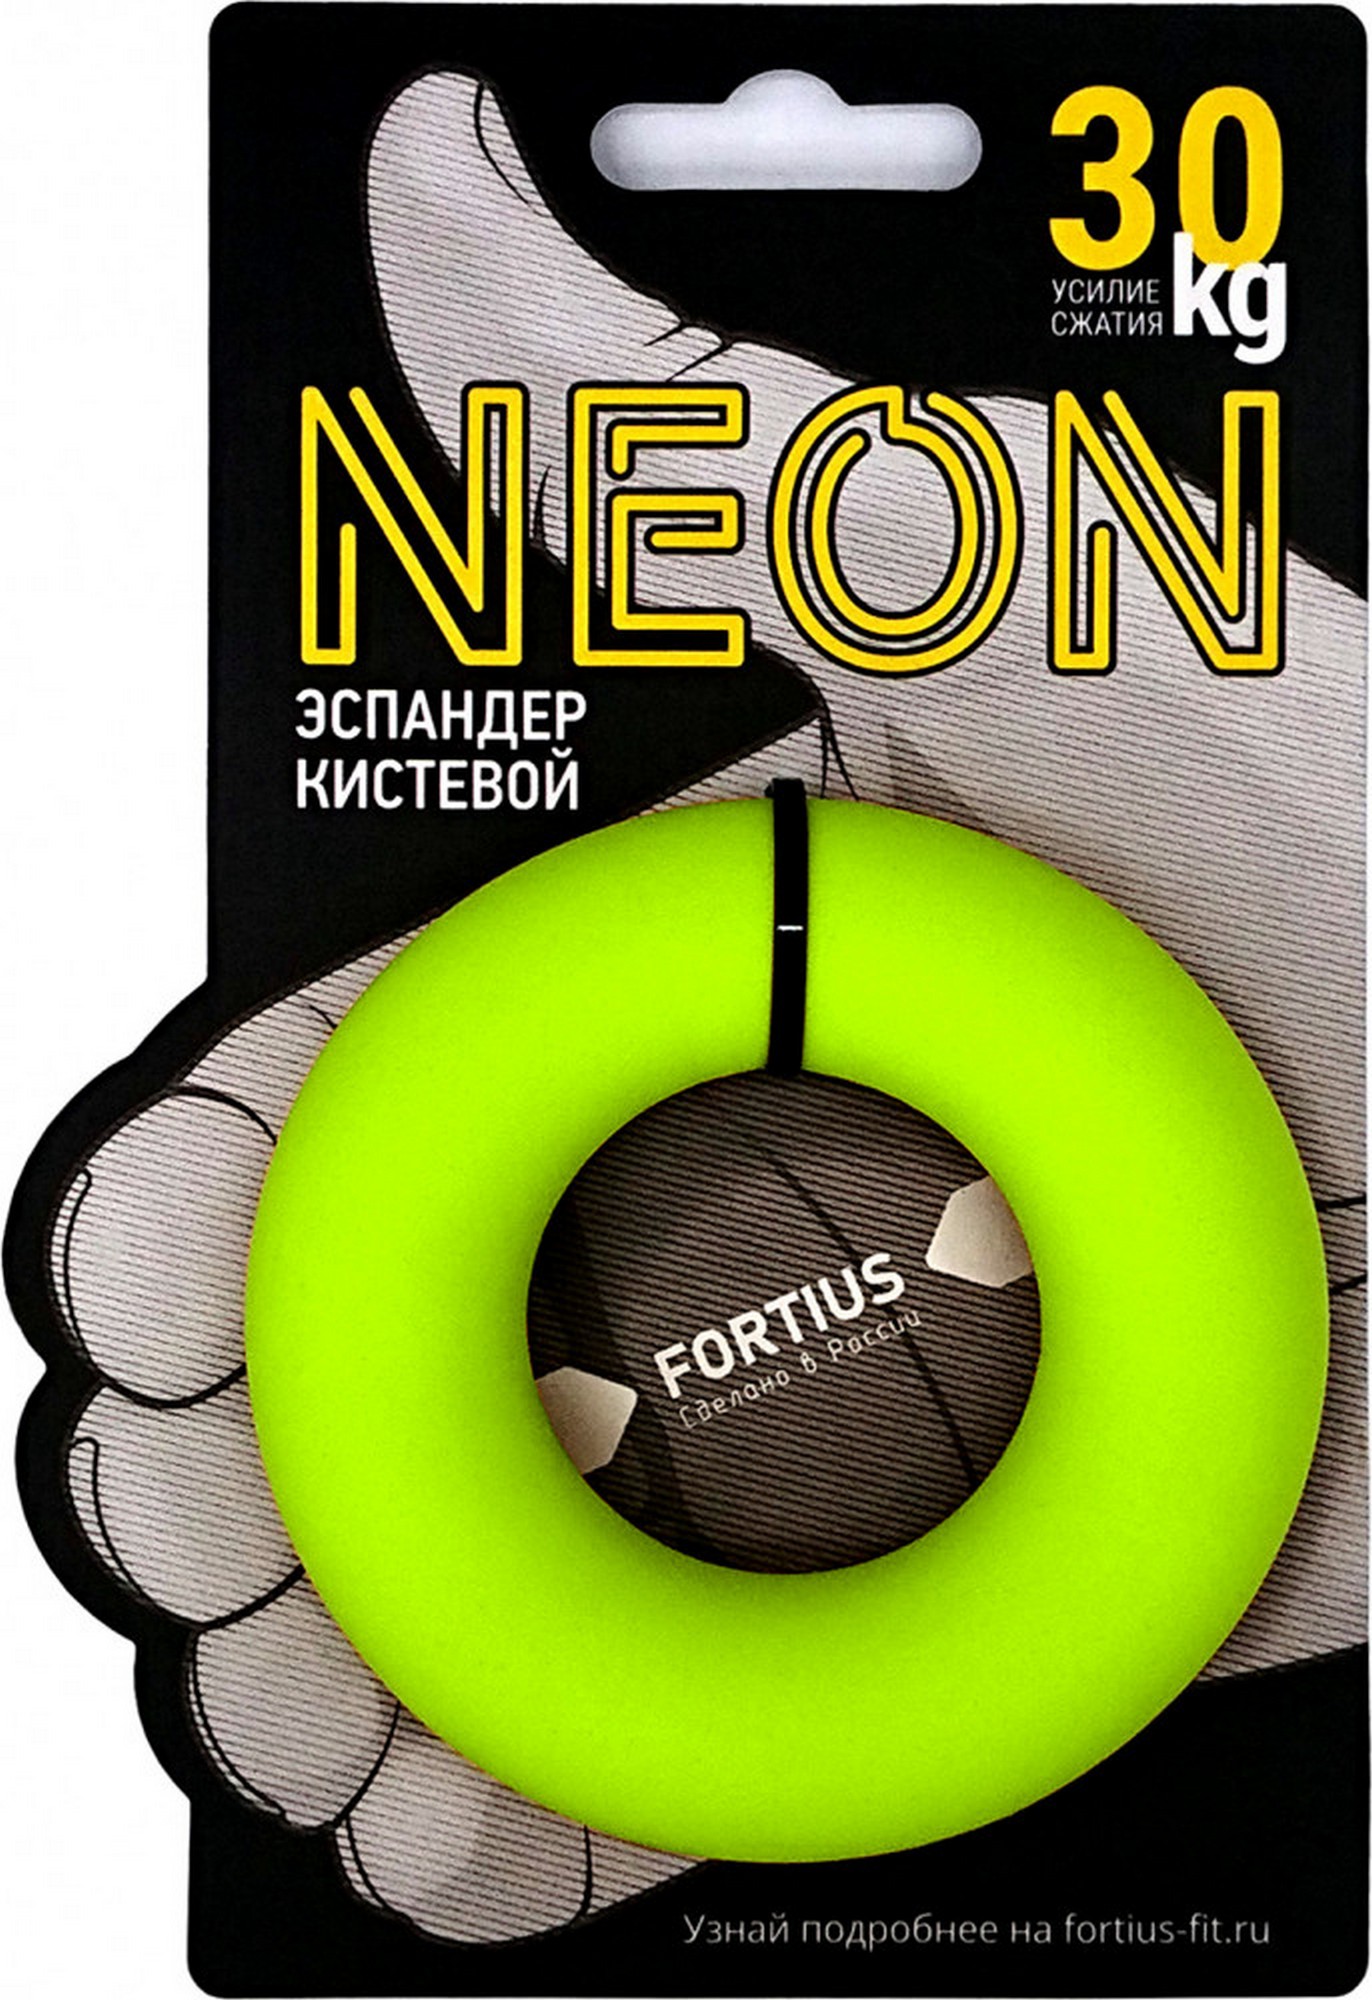 Эспандер кистевой Fortius Neon 30 кг H180701-30FY желтый 1372_2000